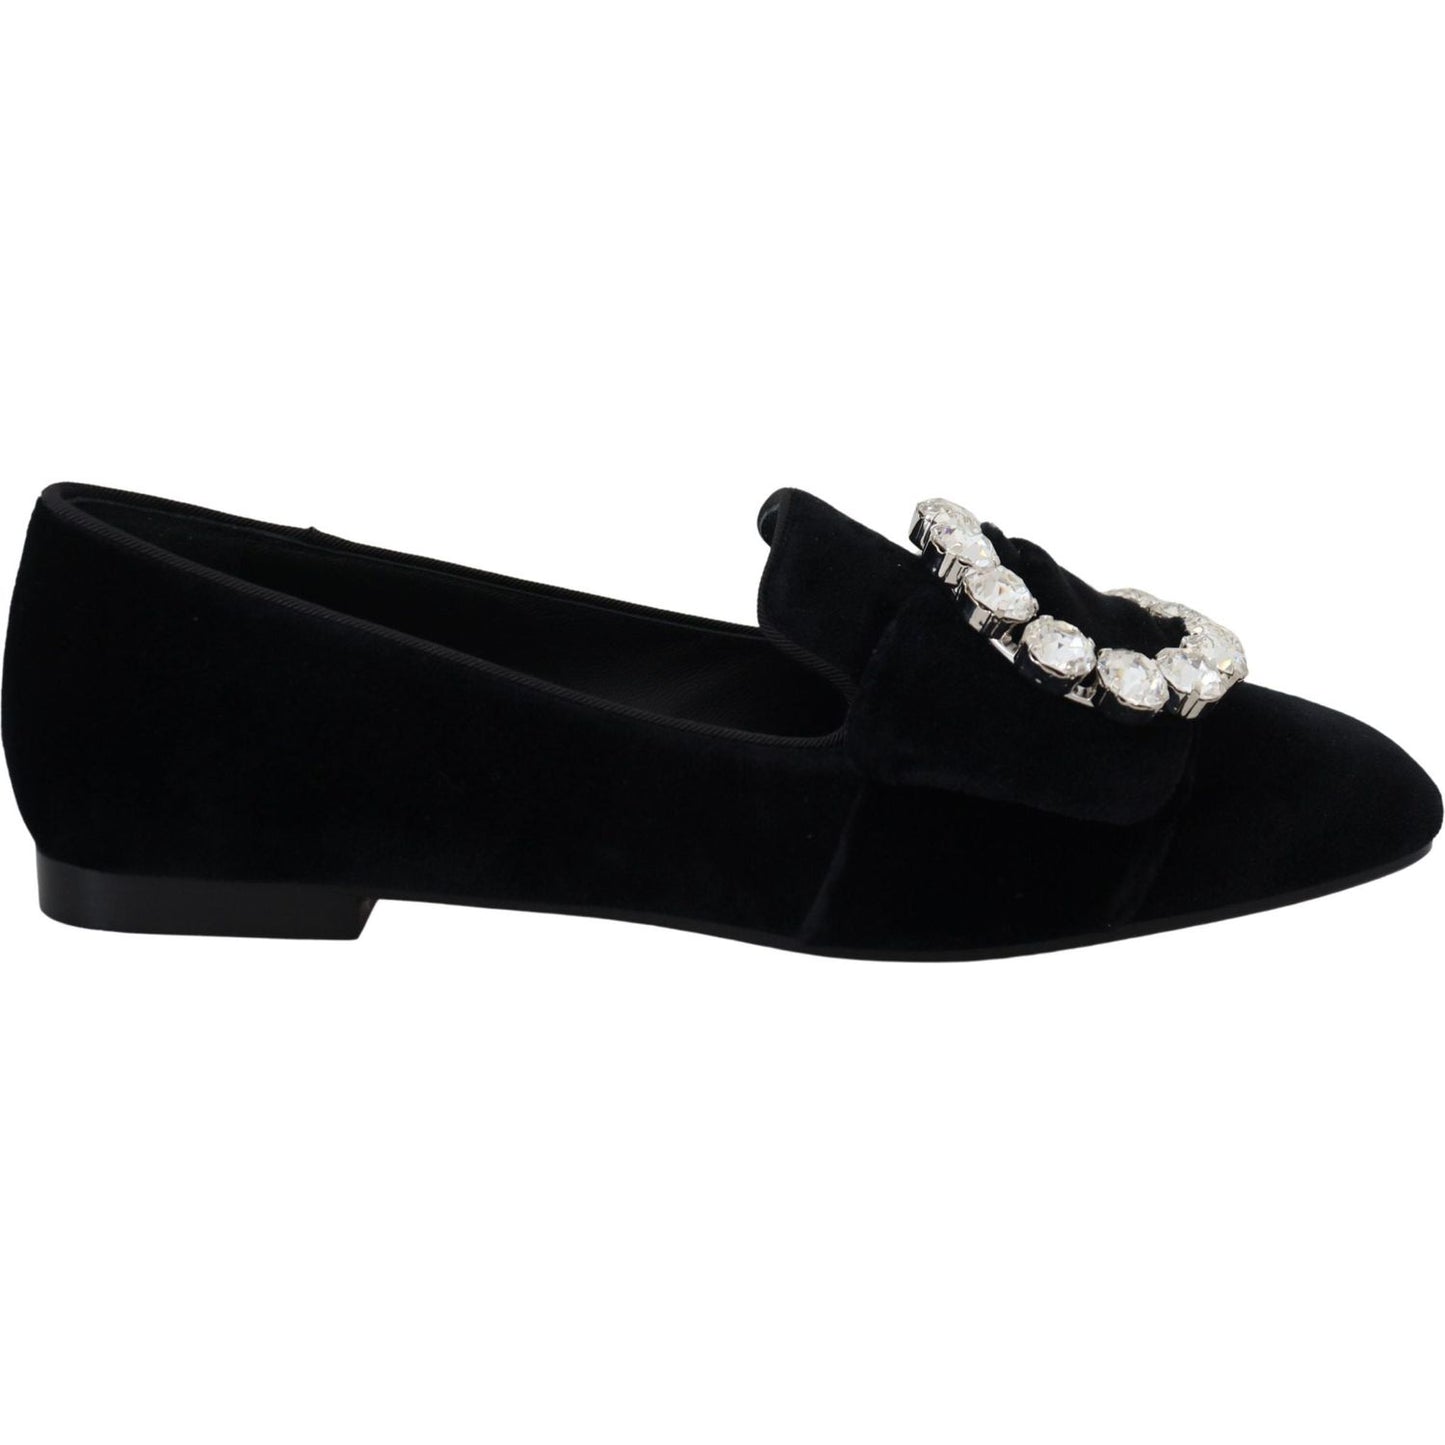 Dolce & Gabbana Chic Velvet Crystal-Embellished Loafers black-velvet-crystals-loafers-flats-shoes